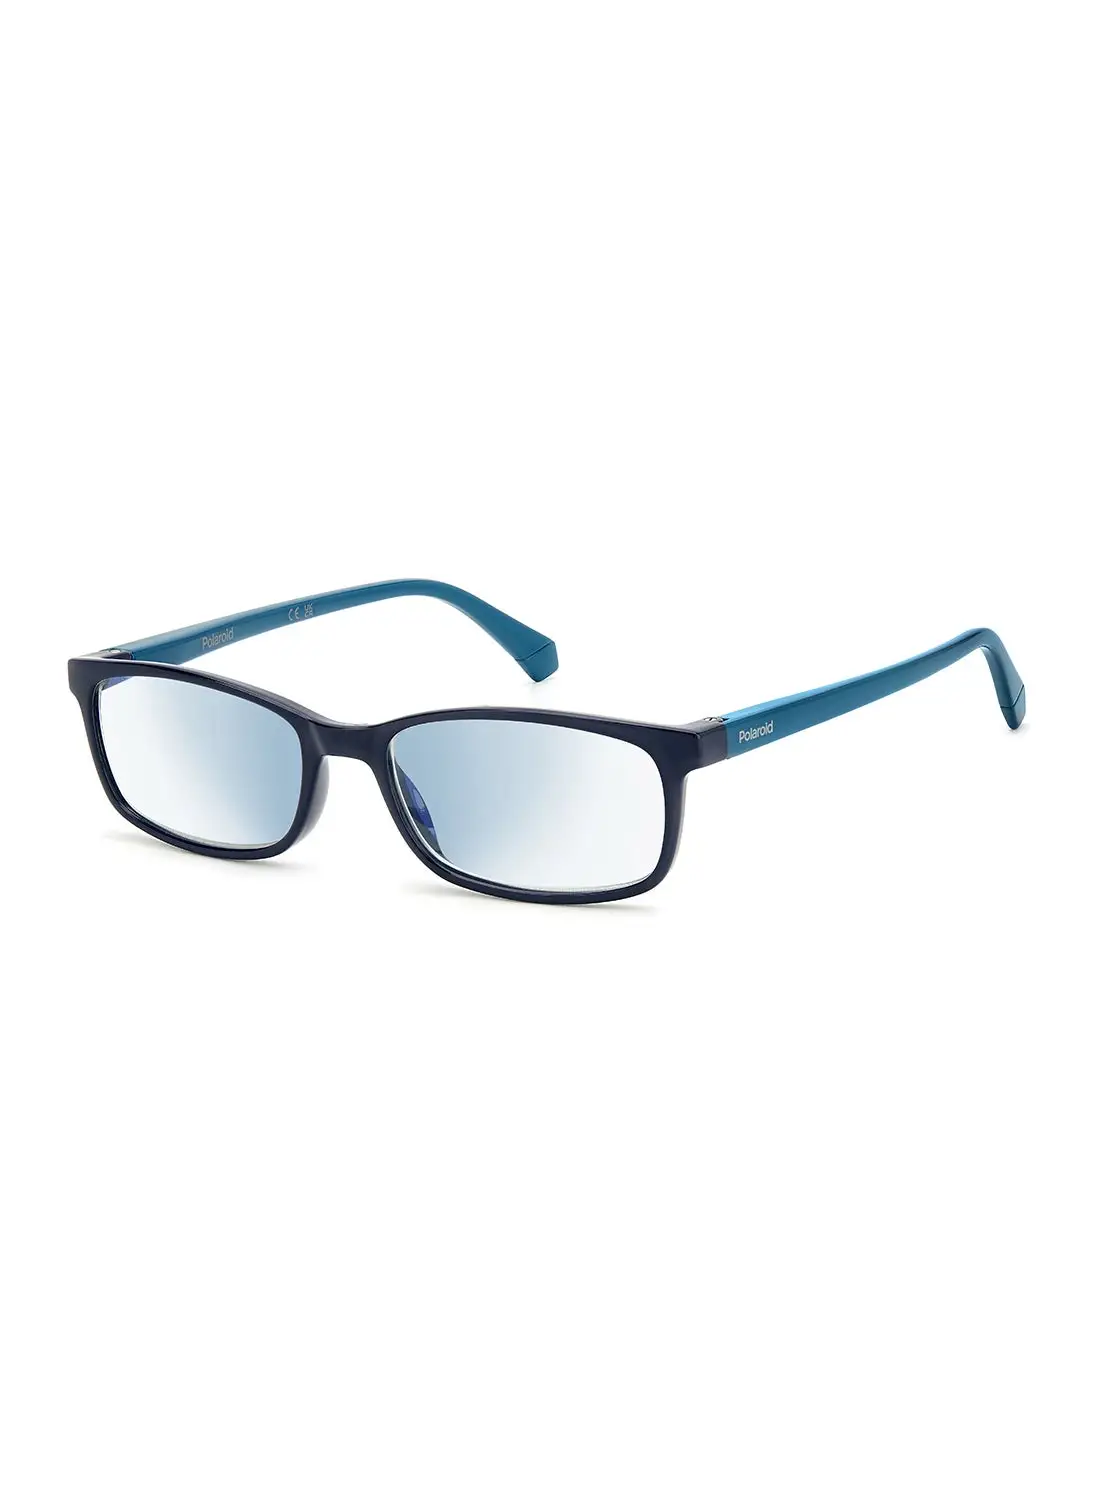 بولارويد نظارات قراءة للرجال - Pld 0035/R/Bb Blue 54 - مقاس العدسة: 54 ملم